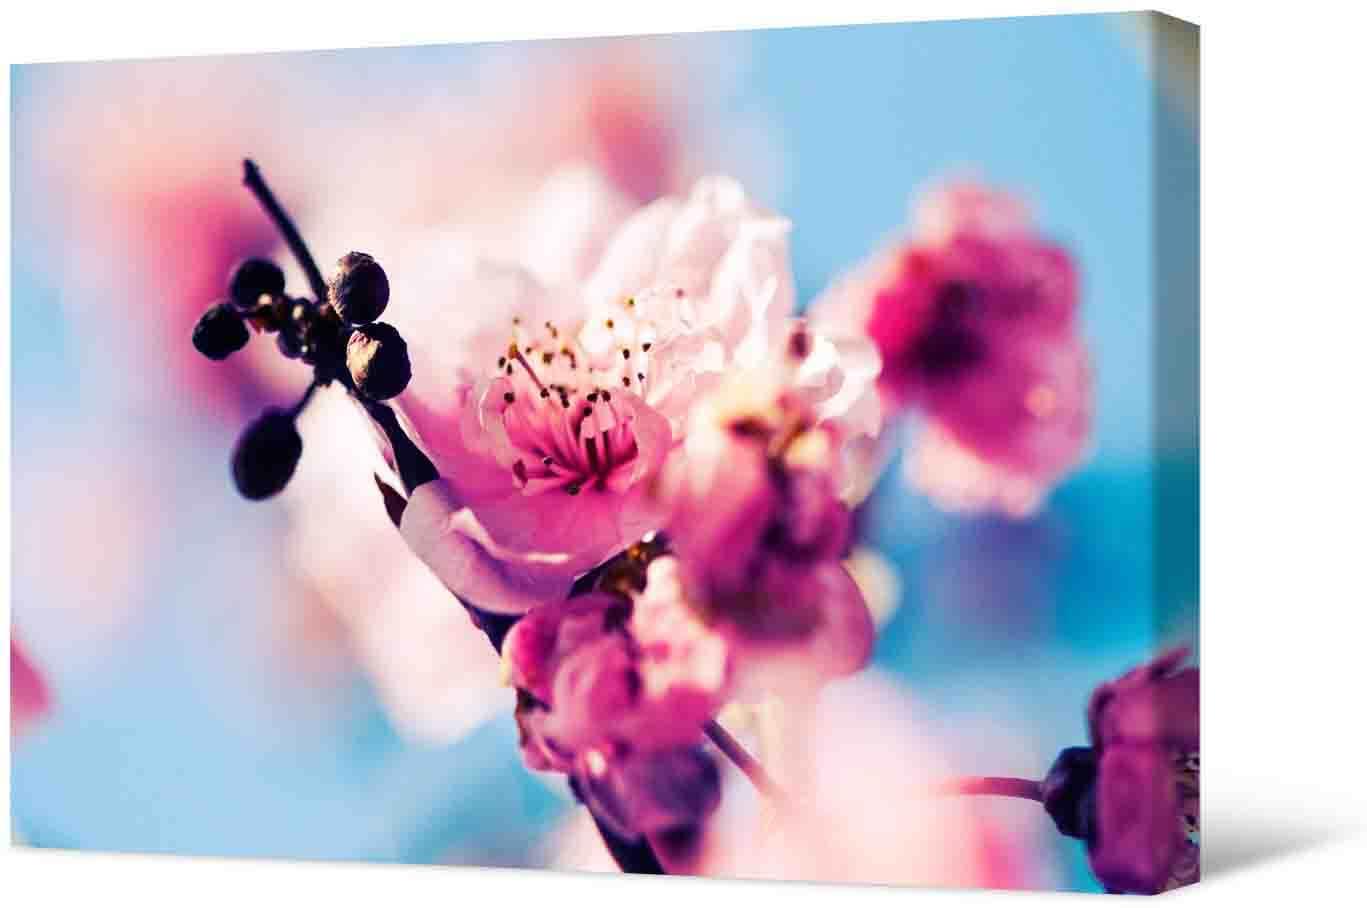 Bilde Fotoattēlā - skaisti ziedi uz koka zara